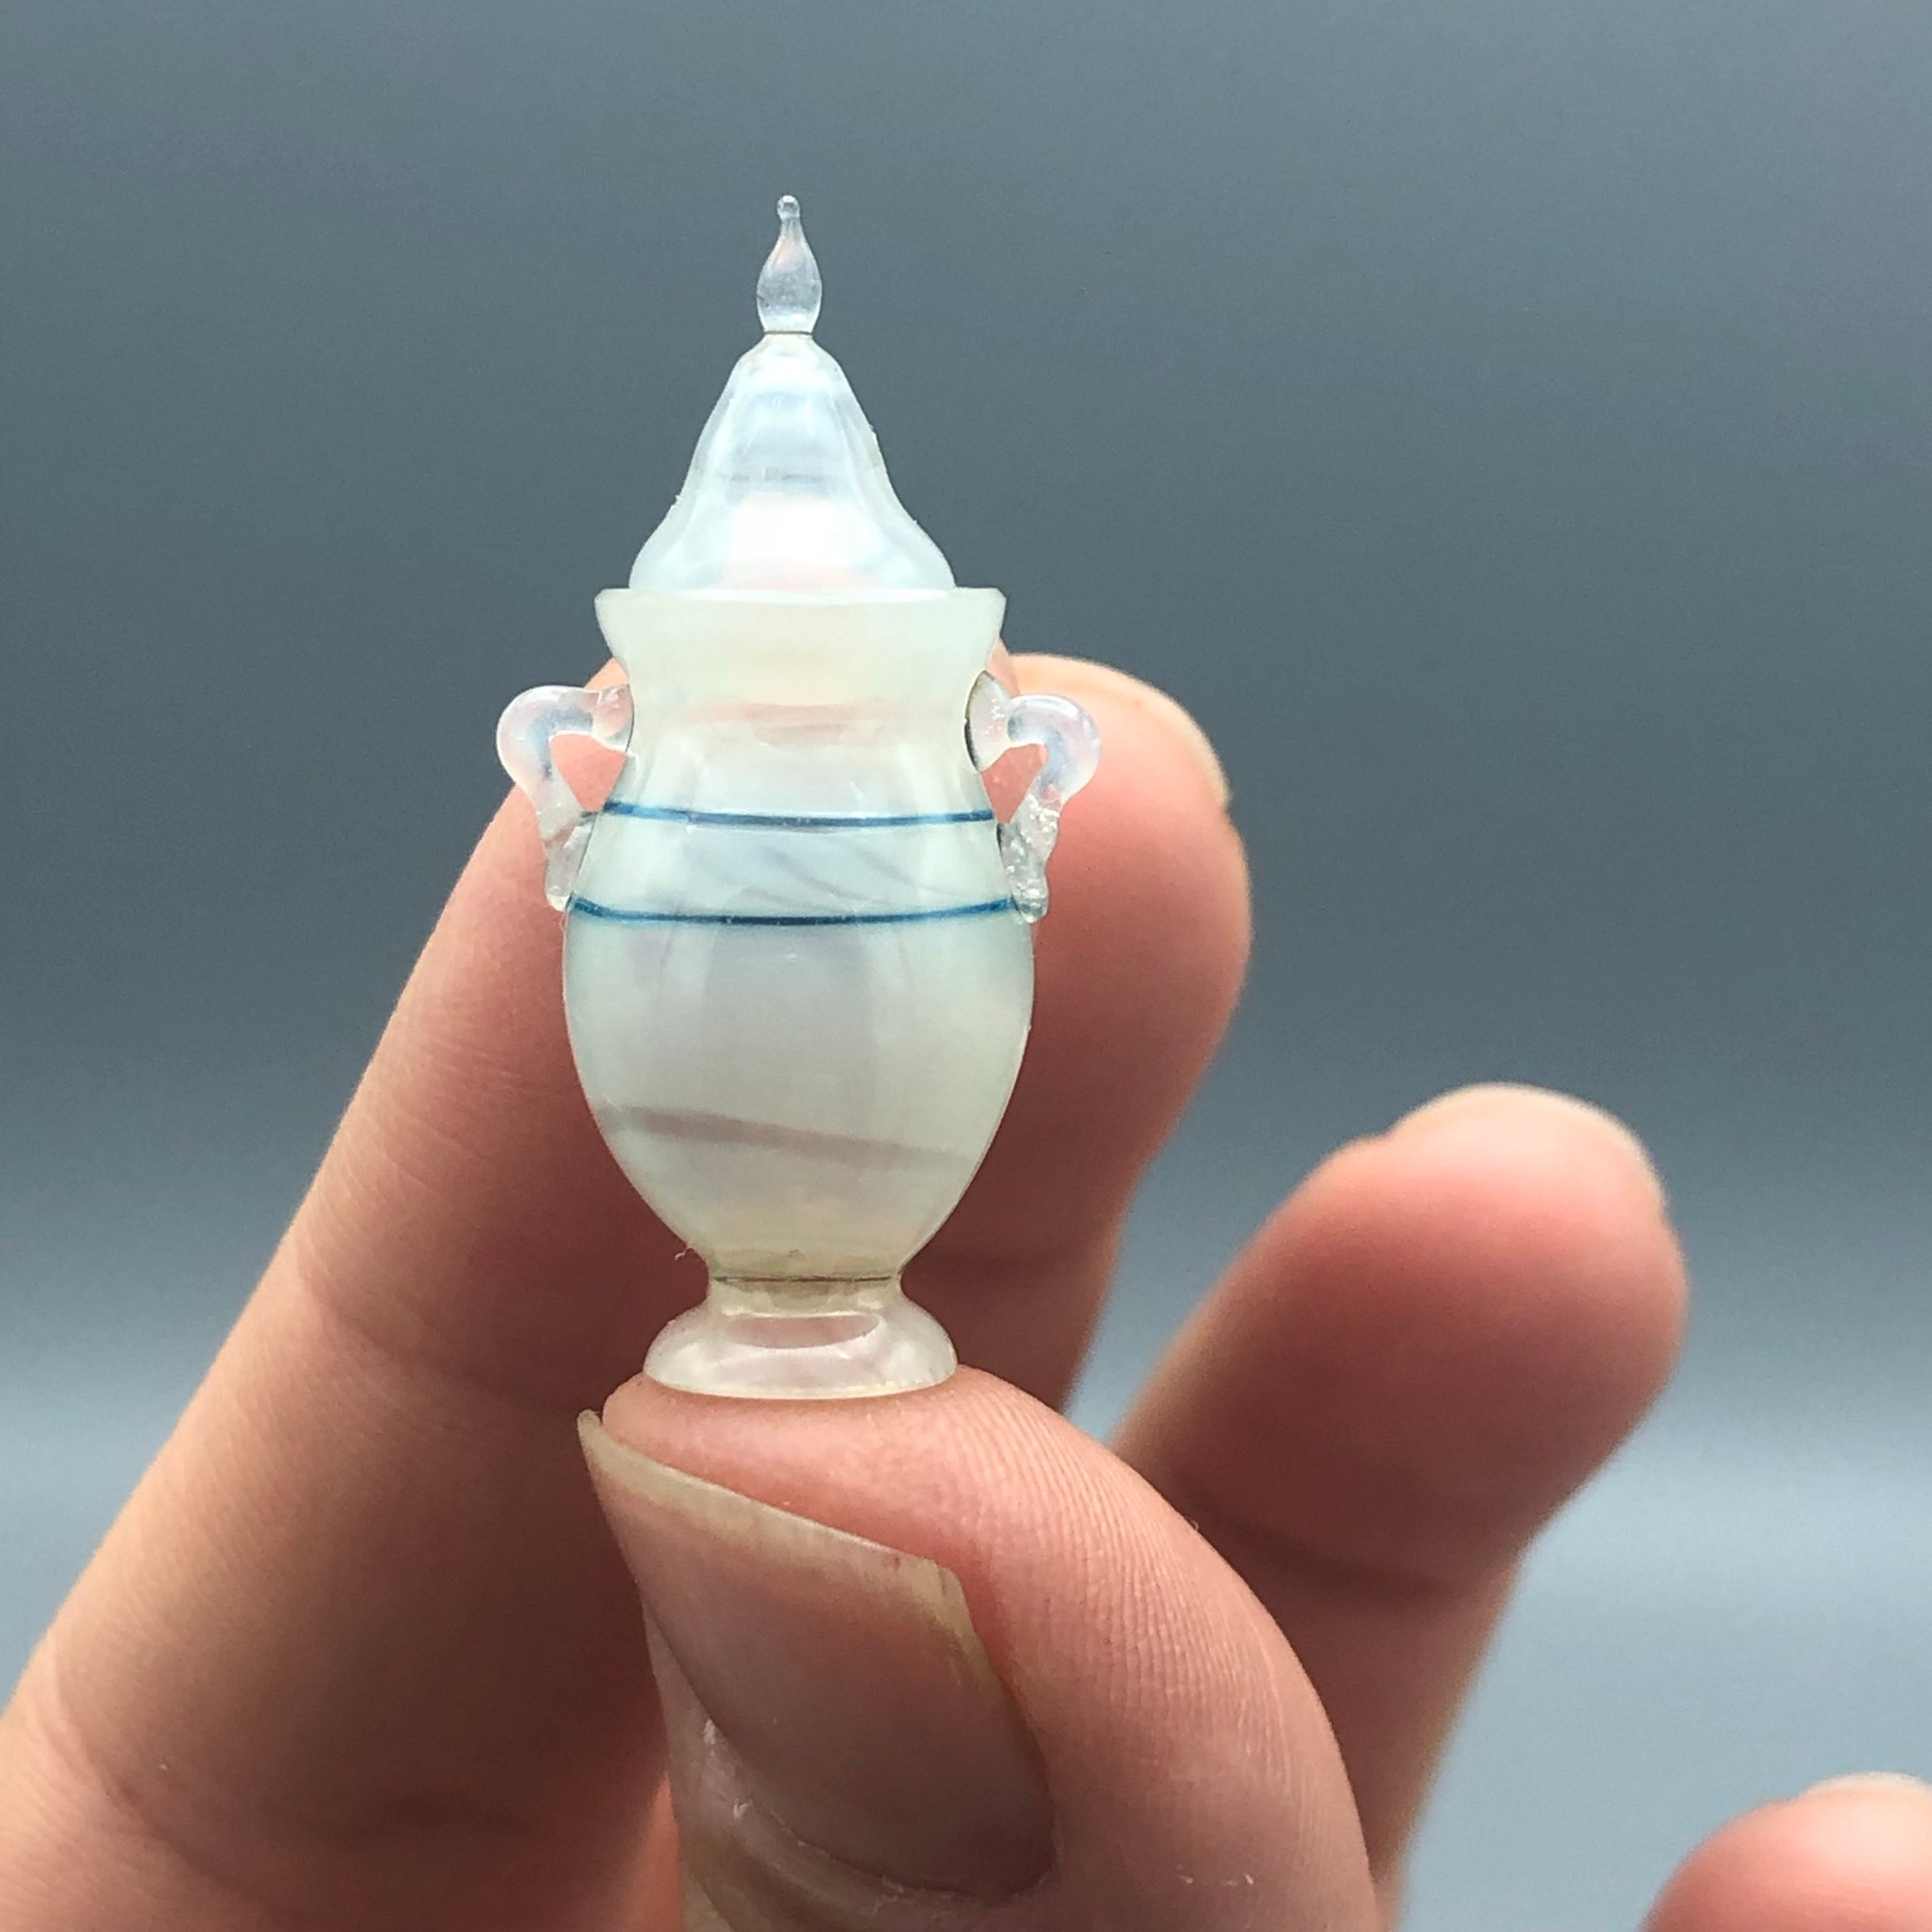 Miniatura de Cristal Jarrón con Tapa Victoriano